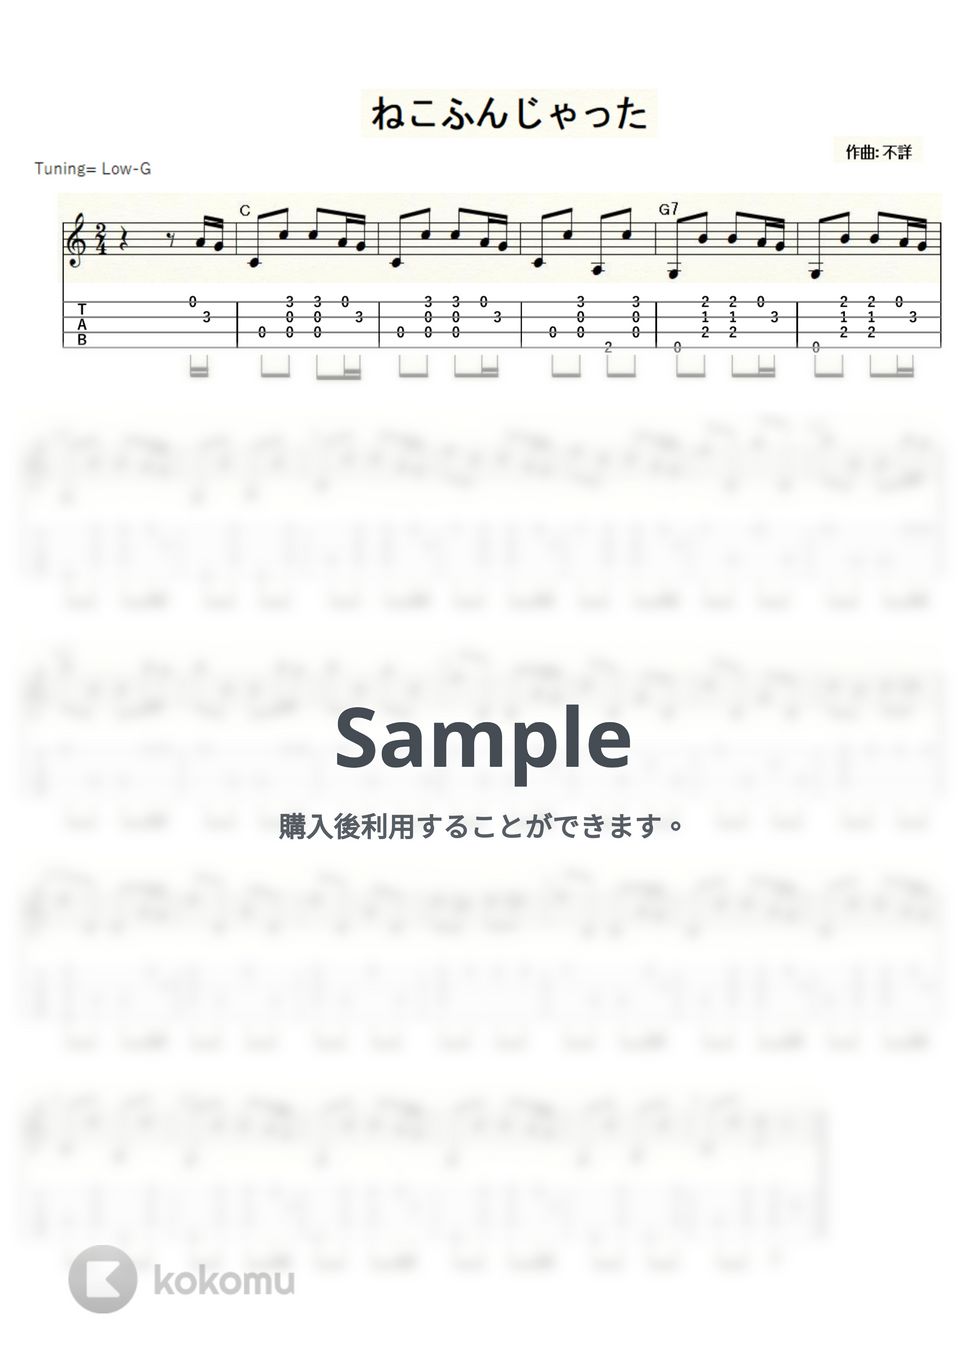 ねこふんじゃった (ｳｸﾚﾚｿﾛ/Low-G/中級) by ukulelepapa